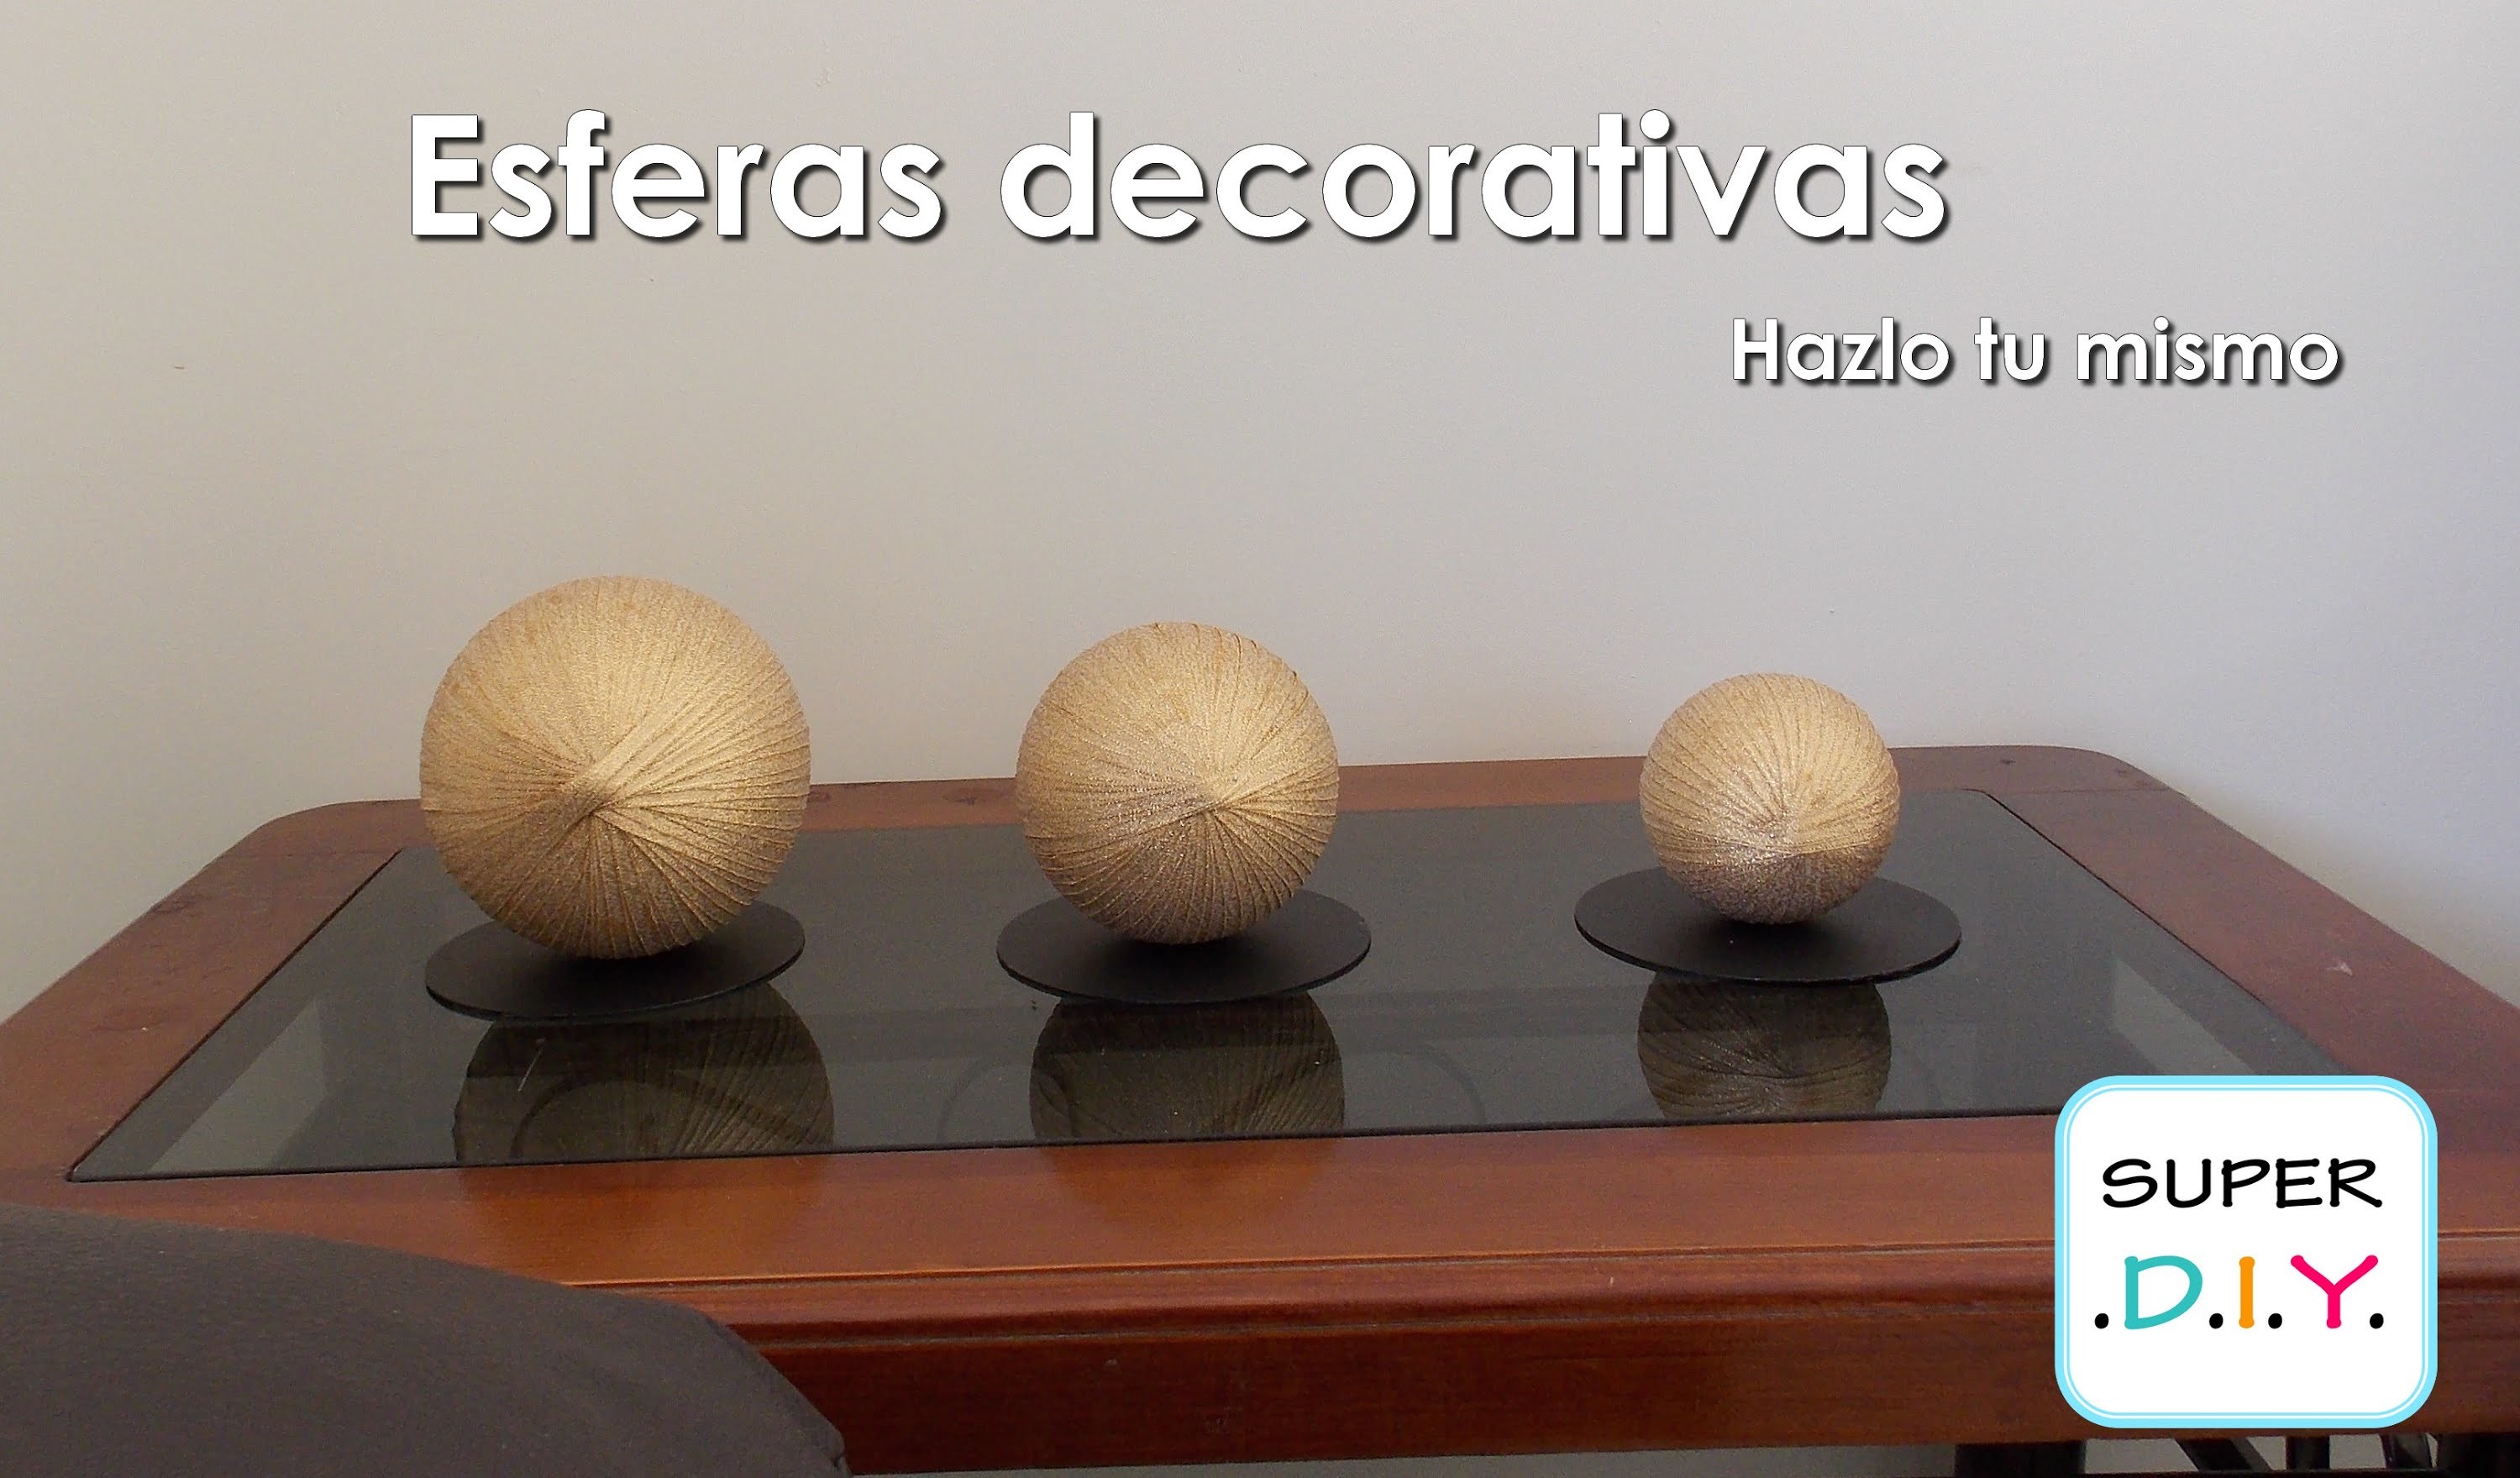 Como hacer Esferas decorativas elegantes fácil y económico.